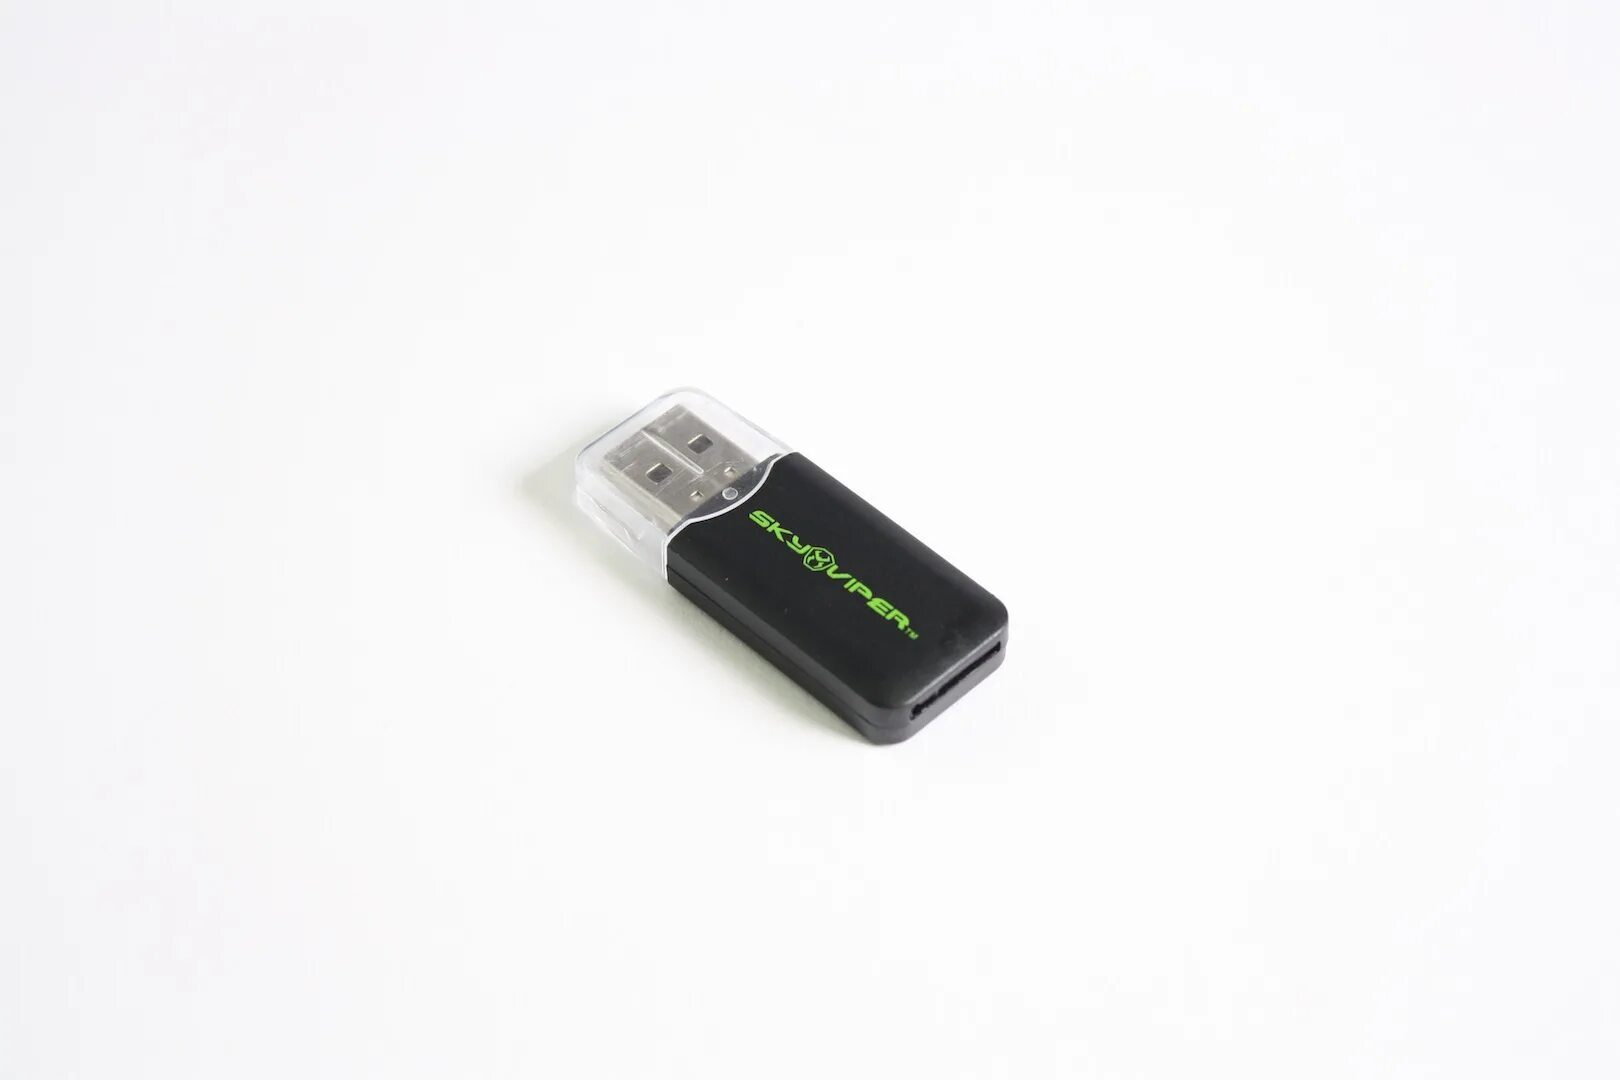 Микро установка. SD to USB адаптер. Плеер Aceline x-1 микро СД. Переходник для карты памяти MICROSD на USB видеорегистратор. Переходник юсб микро СД Kingston.